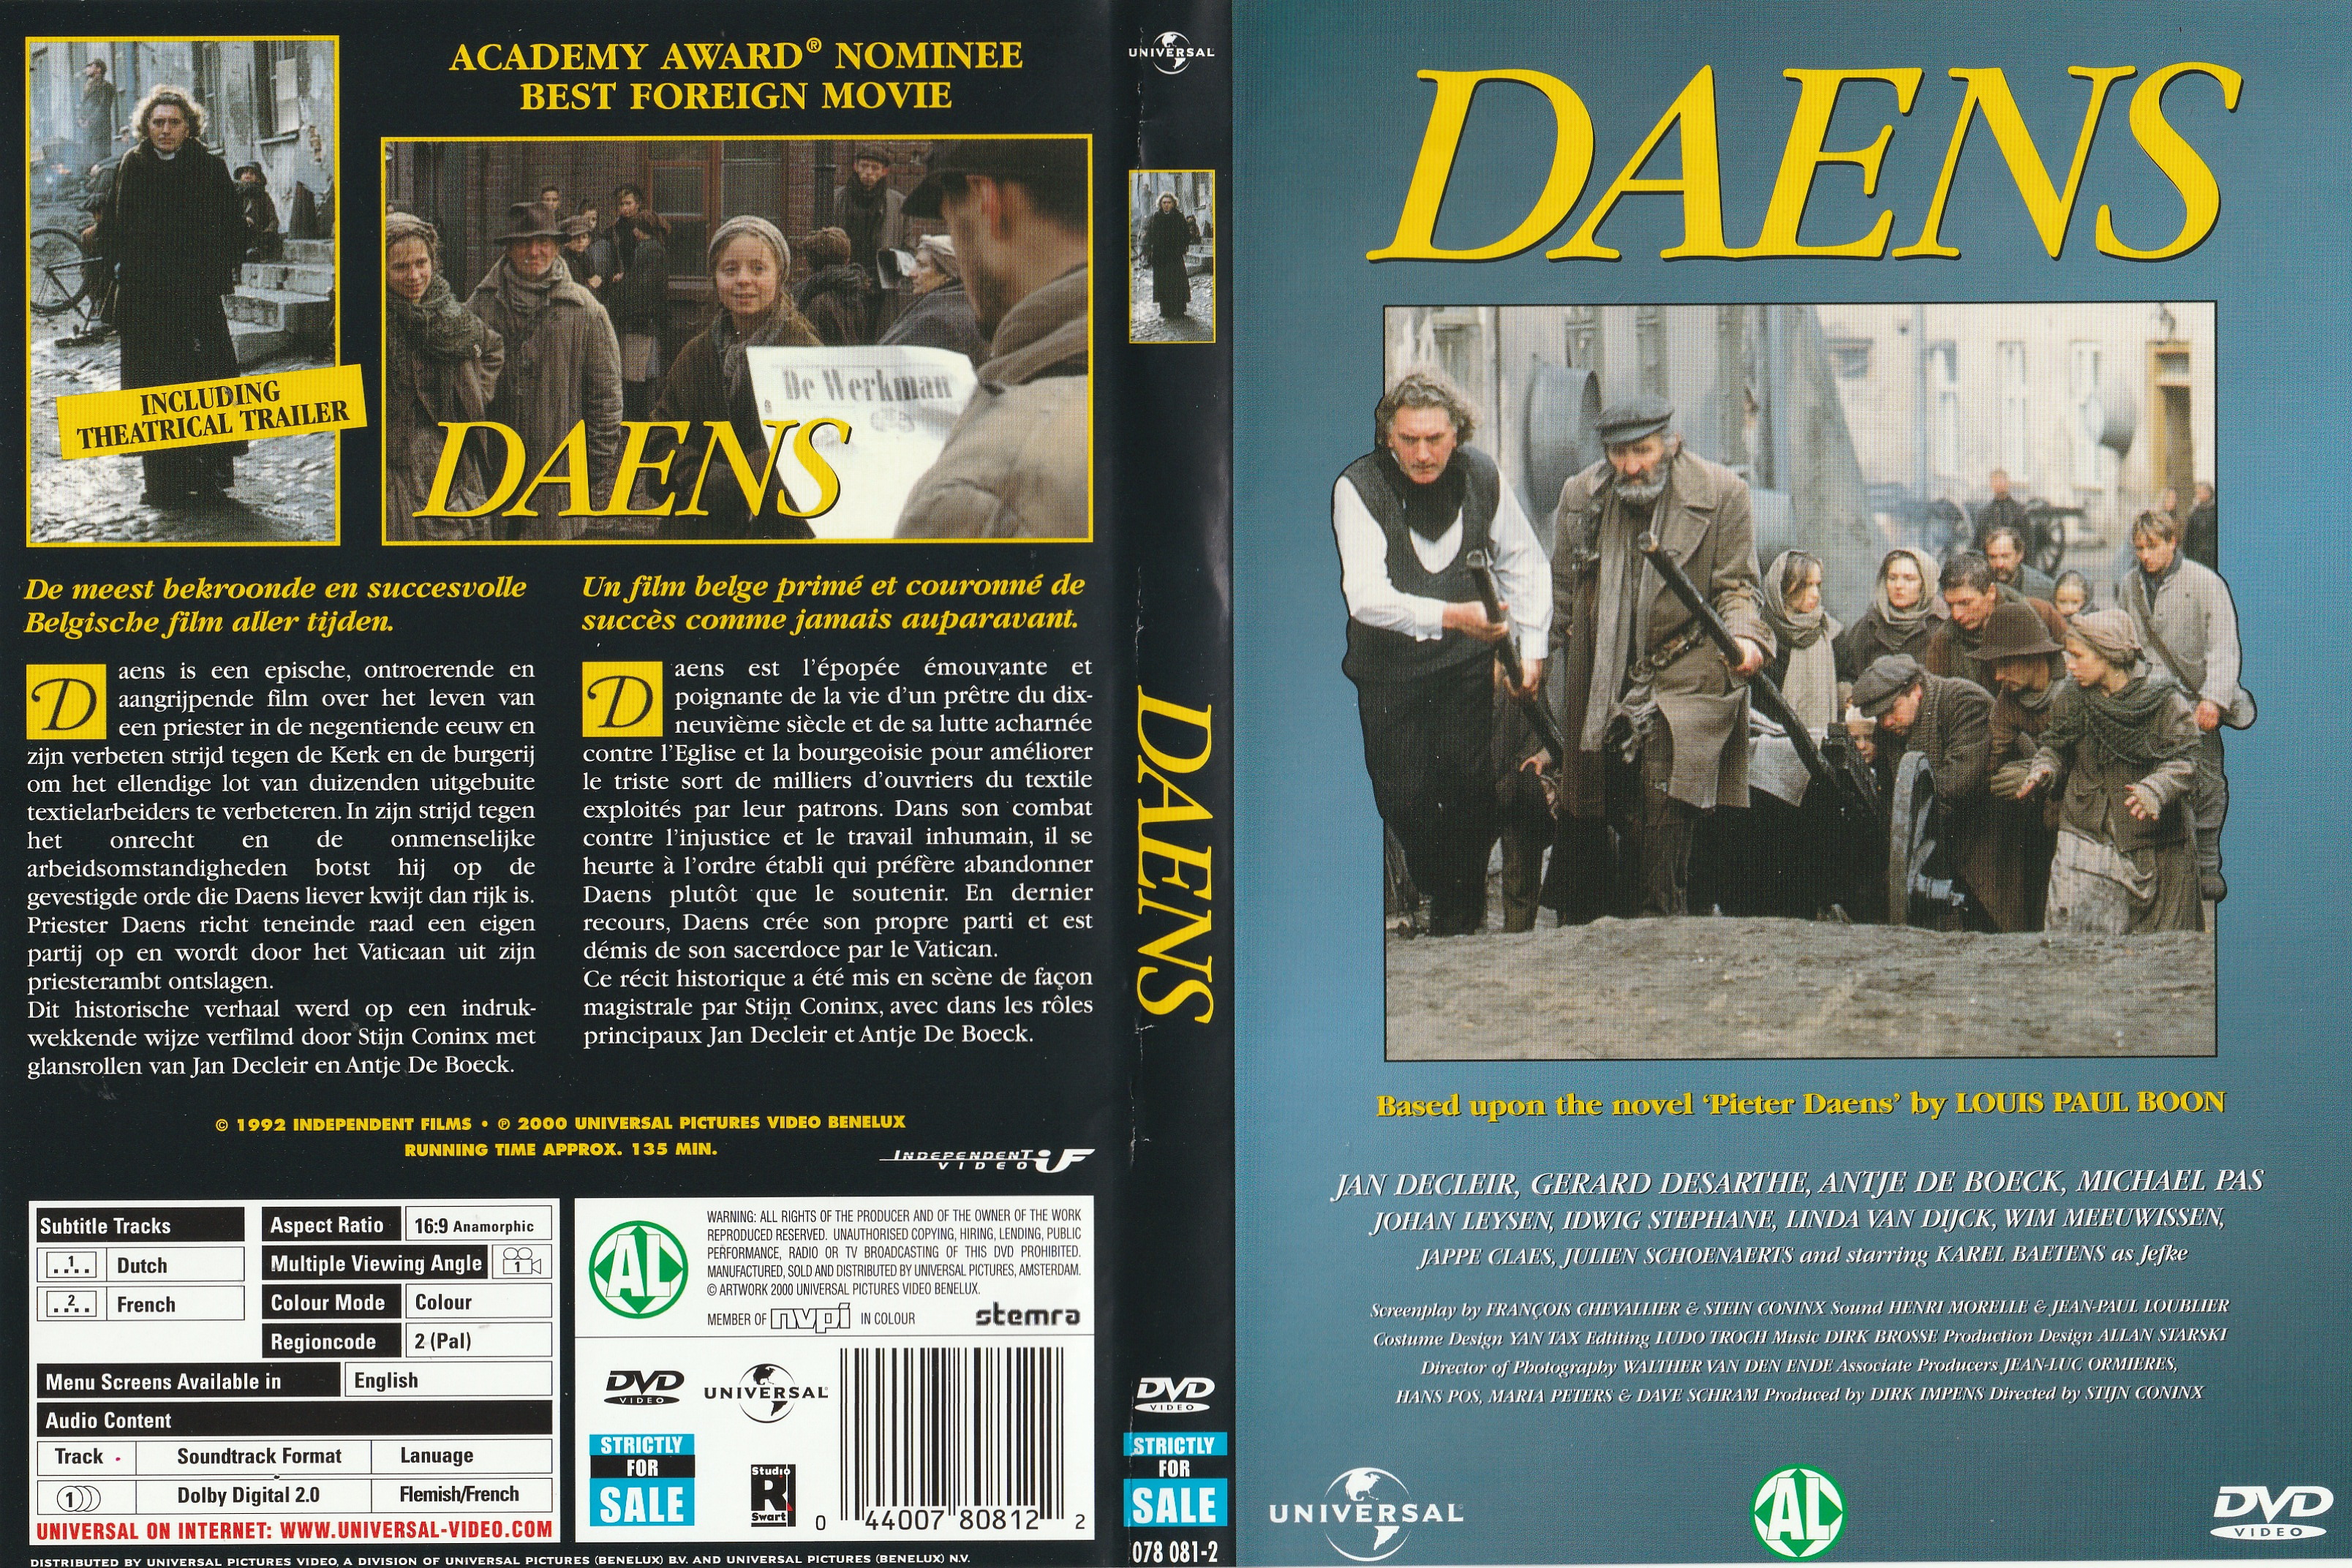 Jaquette DVD Daens v2